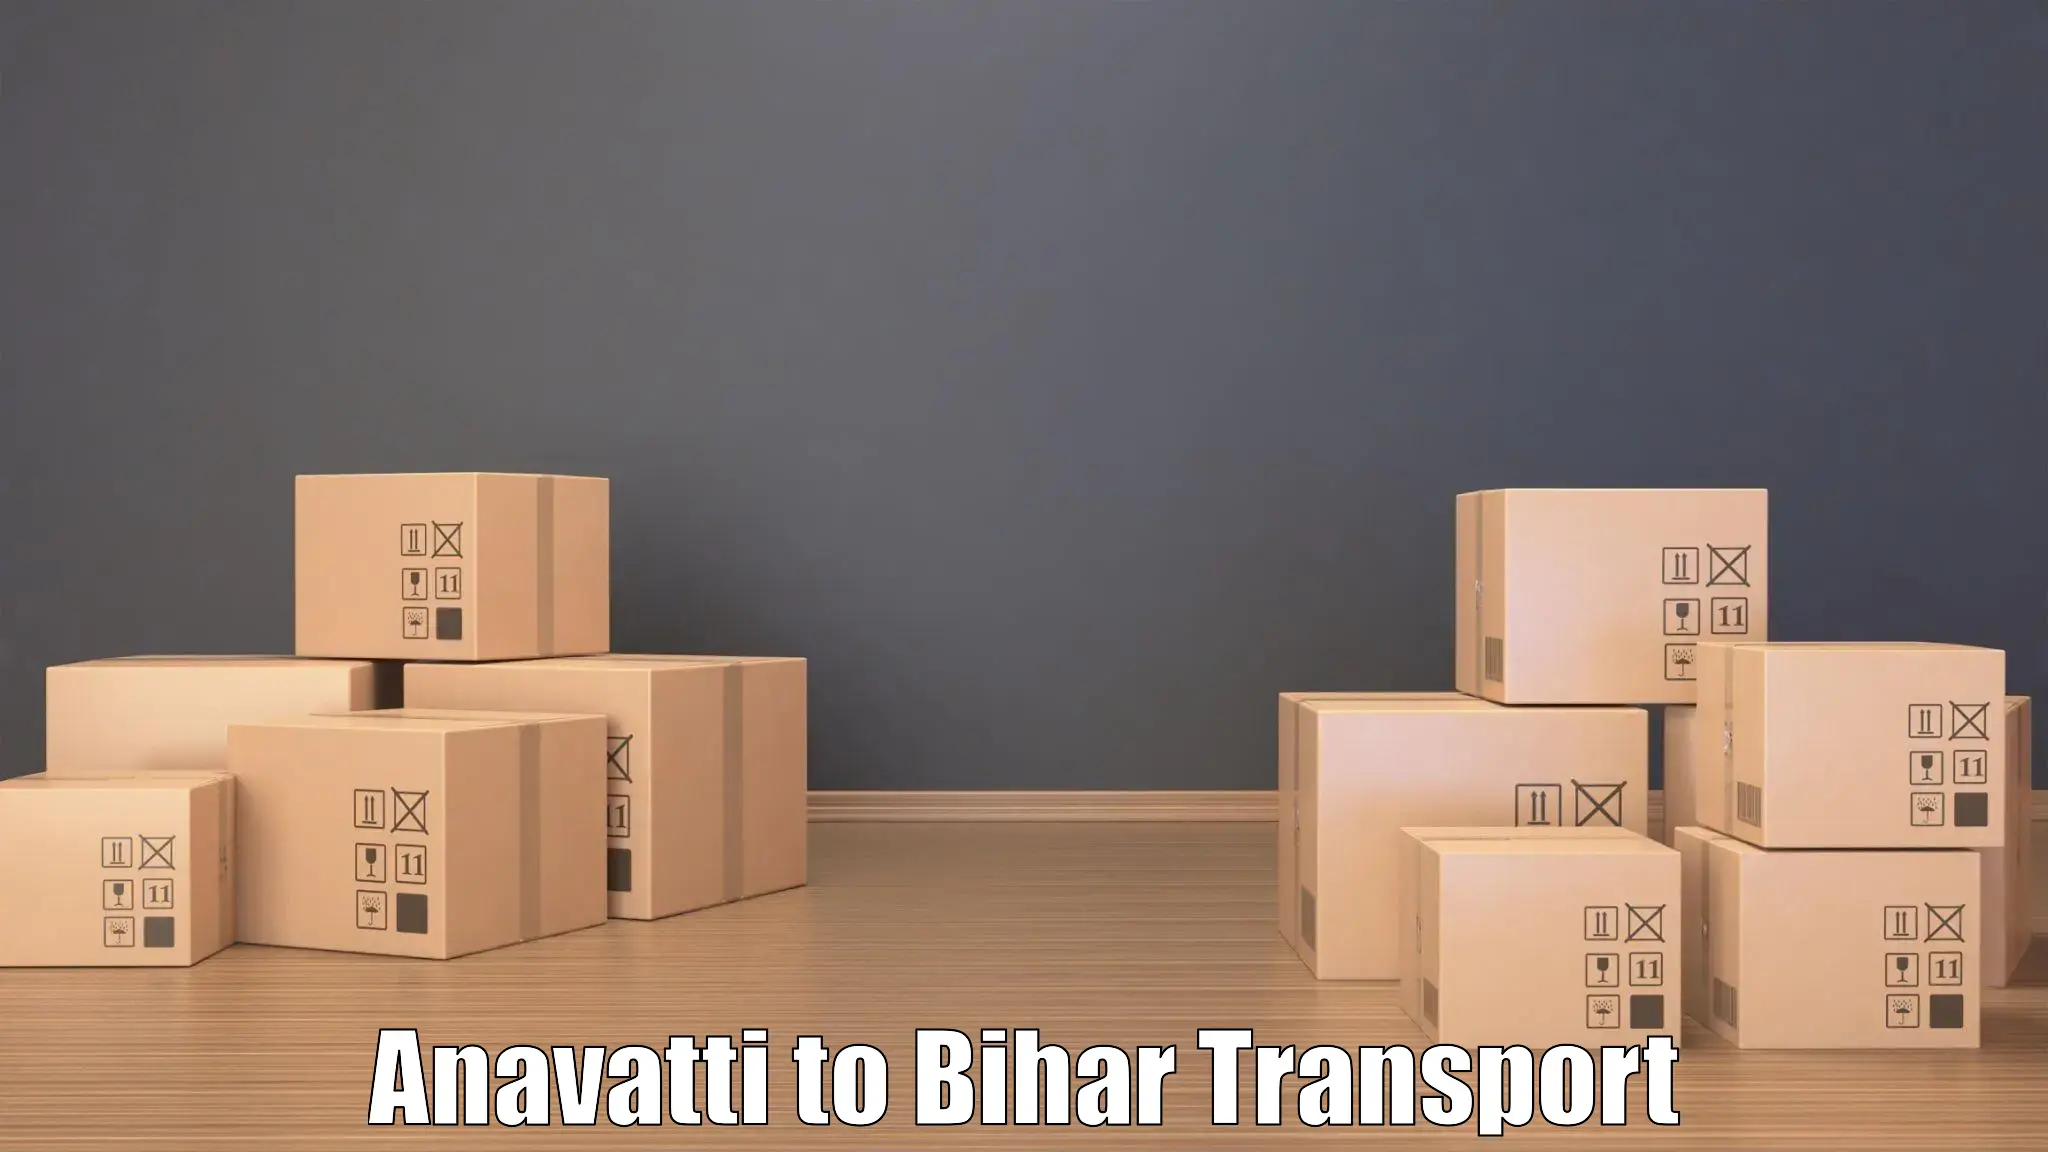 Bike transport service Anavatti to Bihar